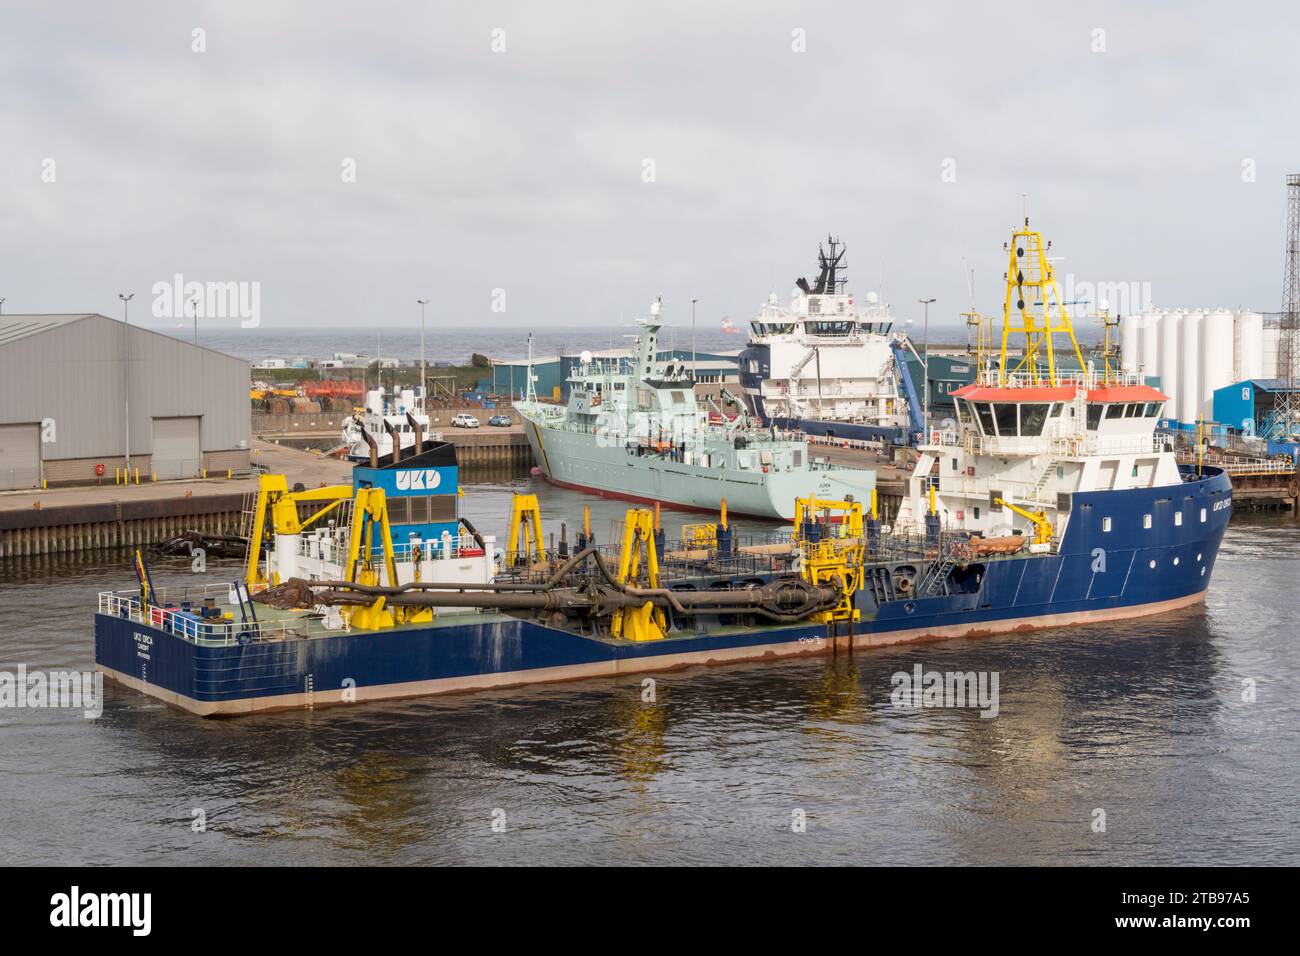 Draga a tramoggia UKD Orca, costruita nel 2010 e registrata a Cardiff, nel porto di Aberdeen. Foto Stock